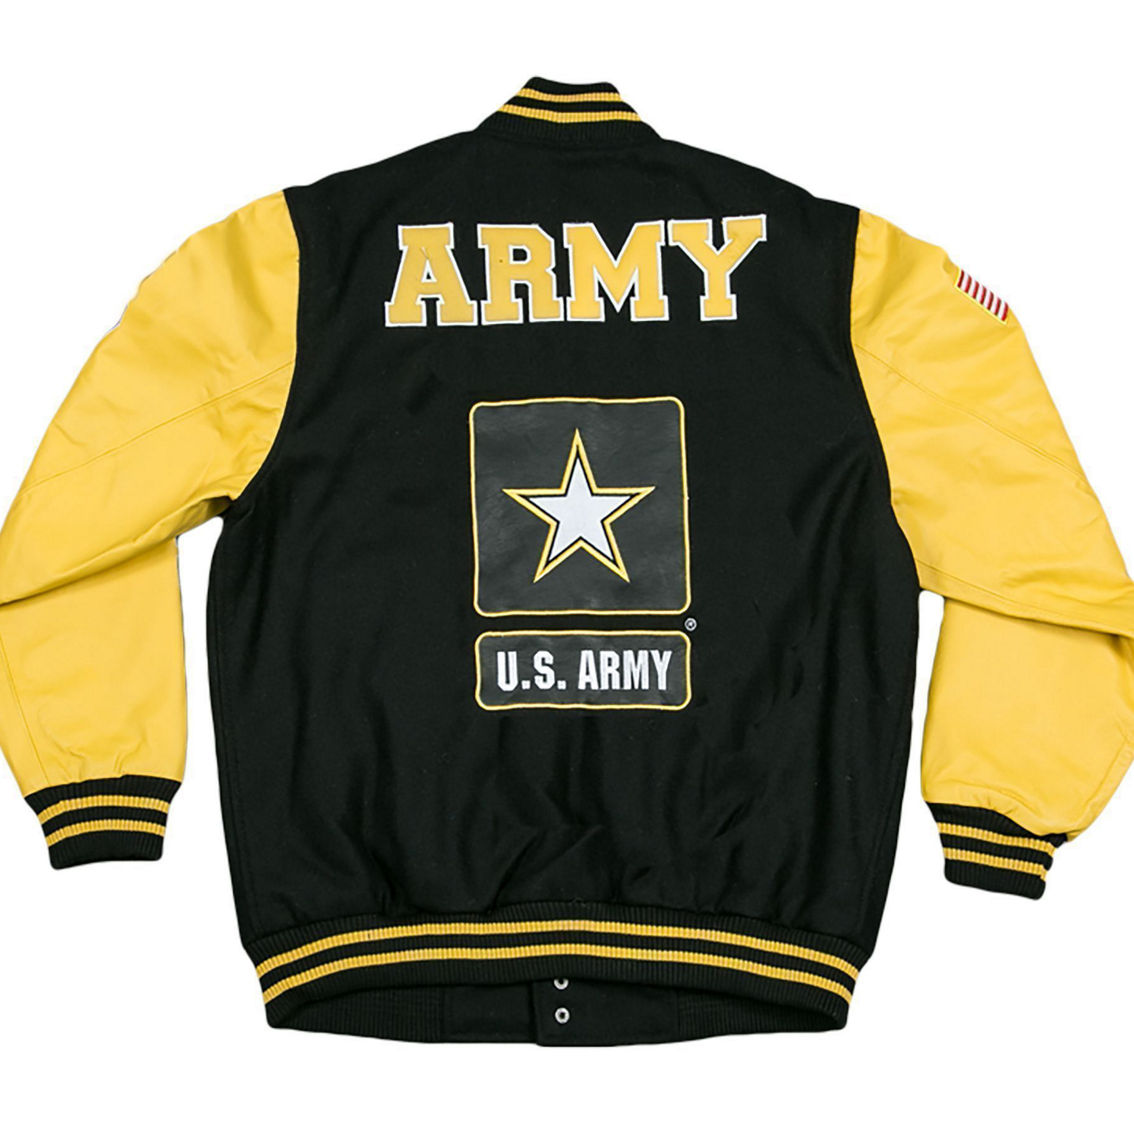 US Army Leather Varsity Jacket - Image 2 of 2